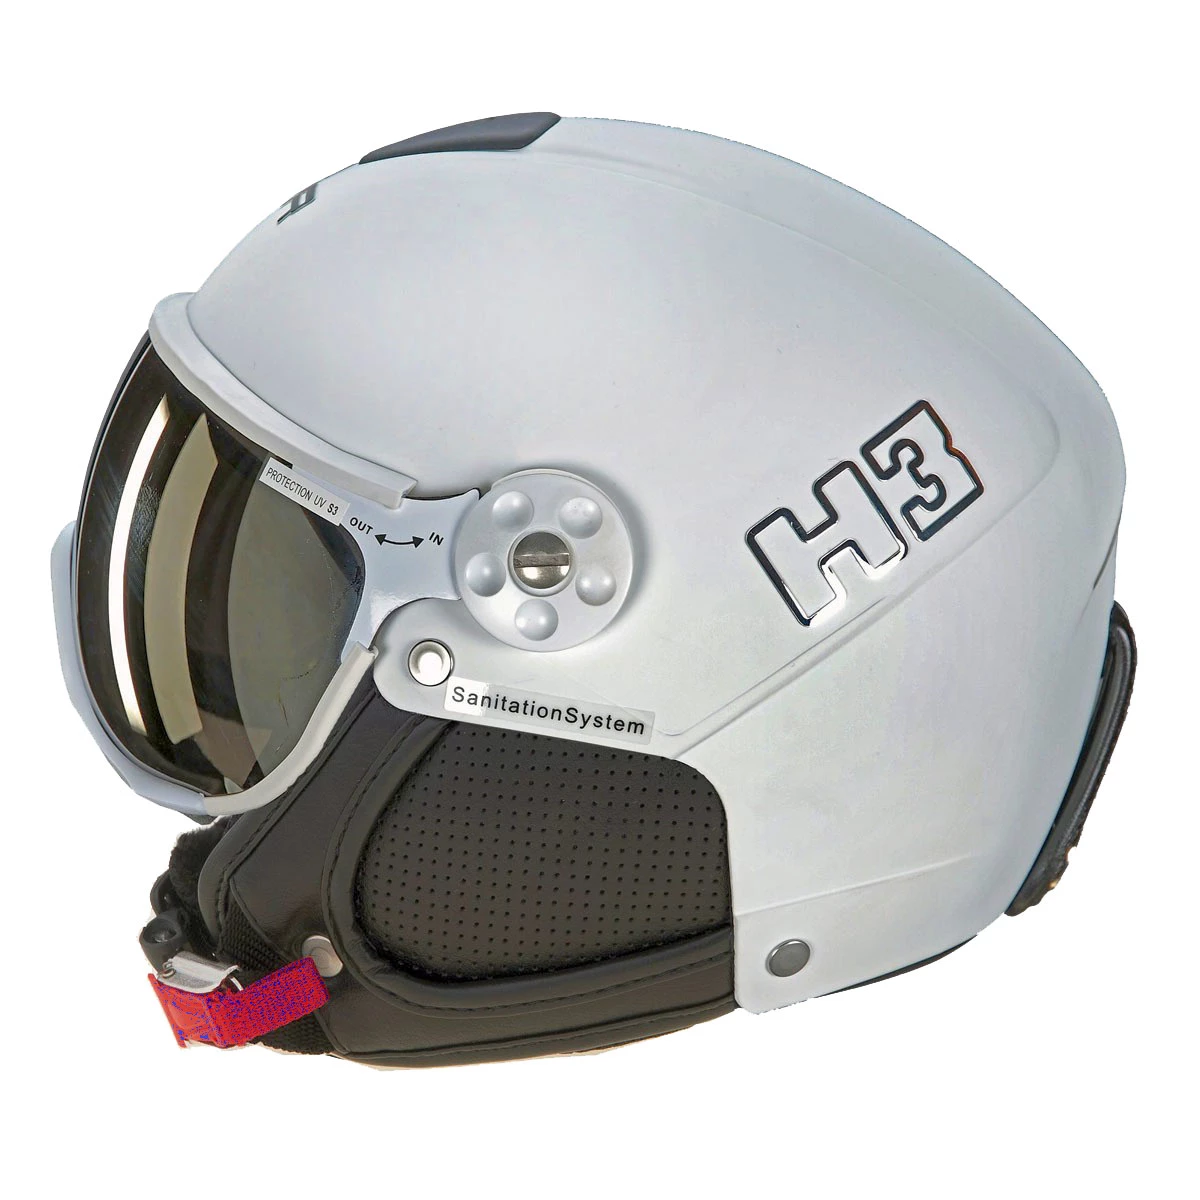 H3 Basic Ski - Helmen - Accessoires - Wintersport - Intersport van Broek Biggelaar